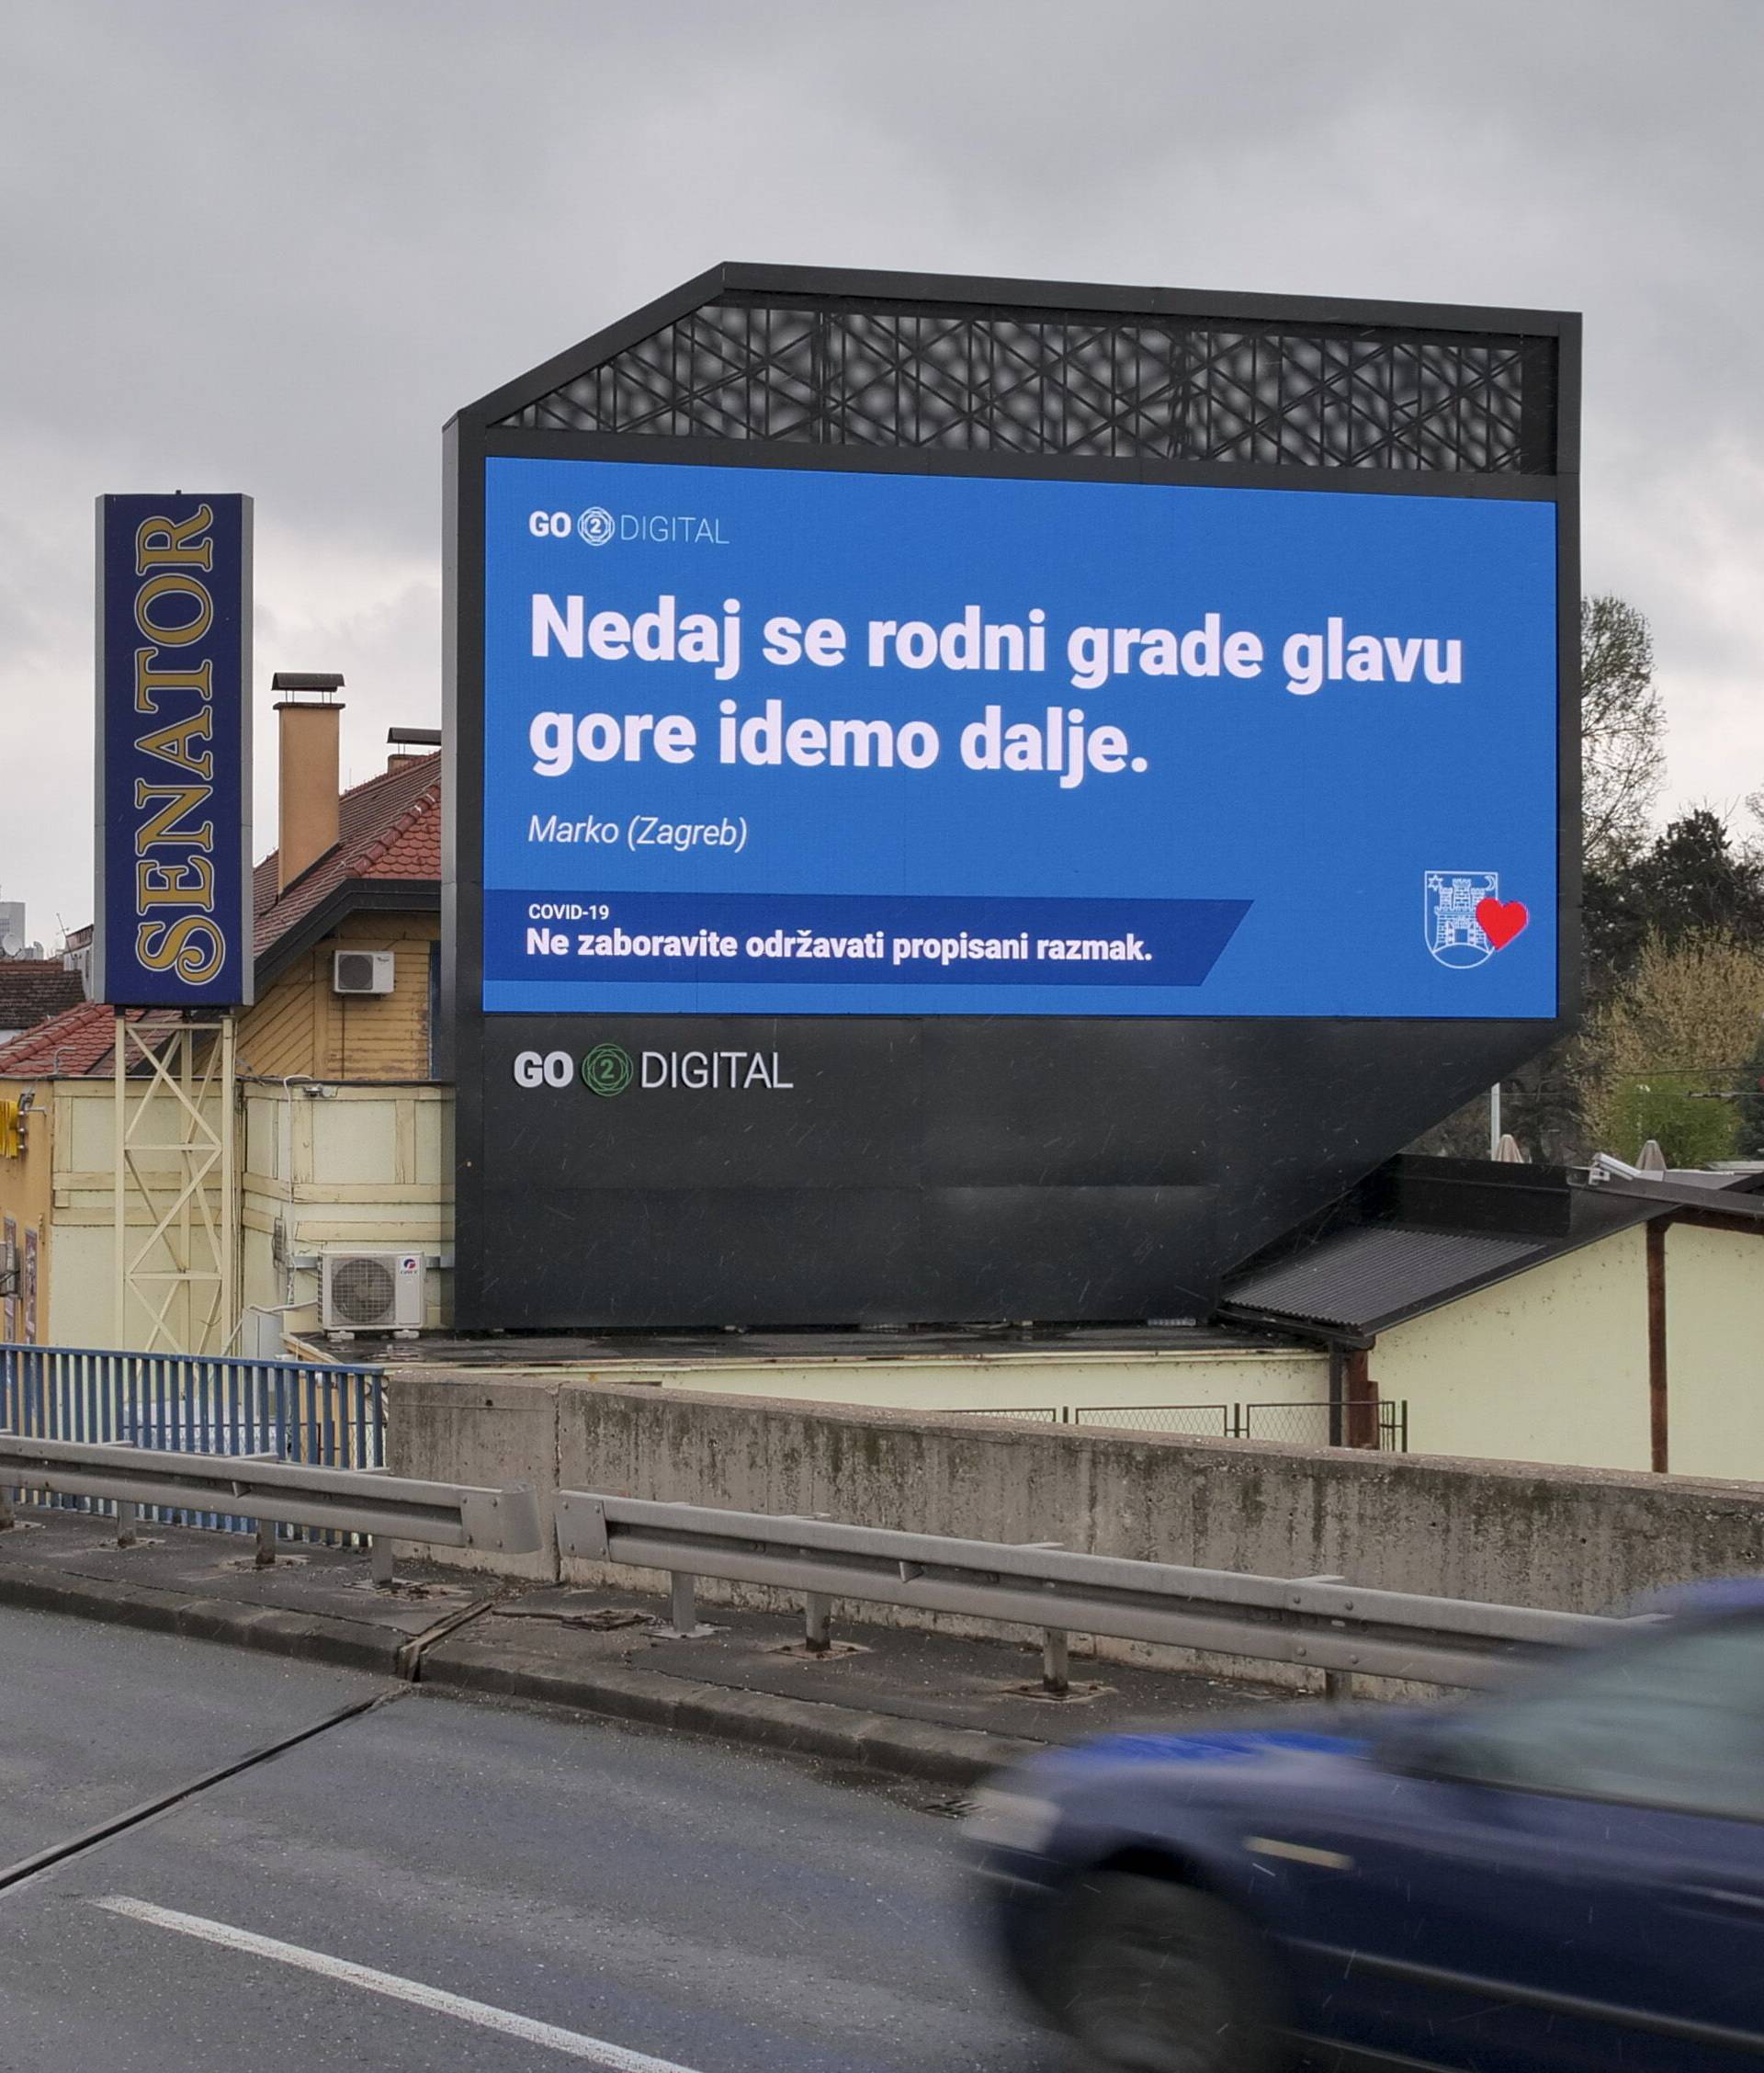 Pošalji poruku i podrži Zagreb, bit će objavljene po gradu